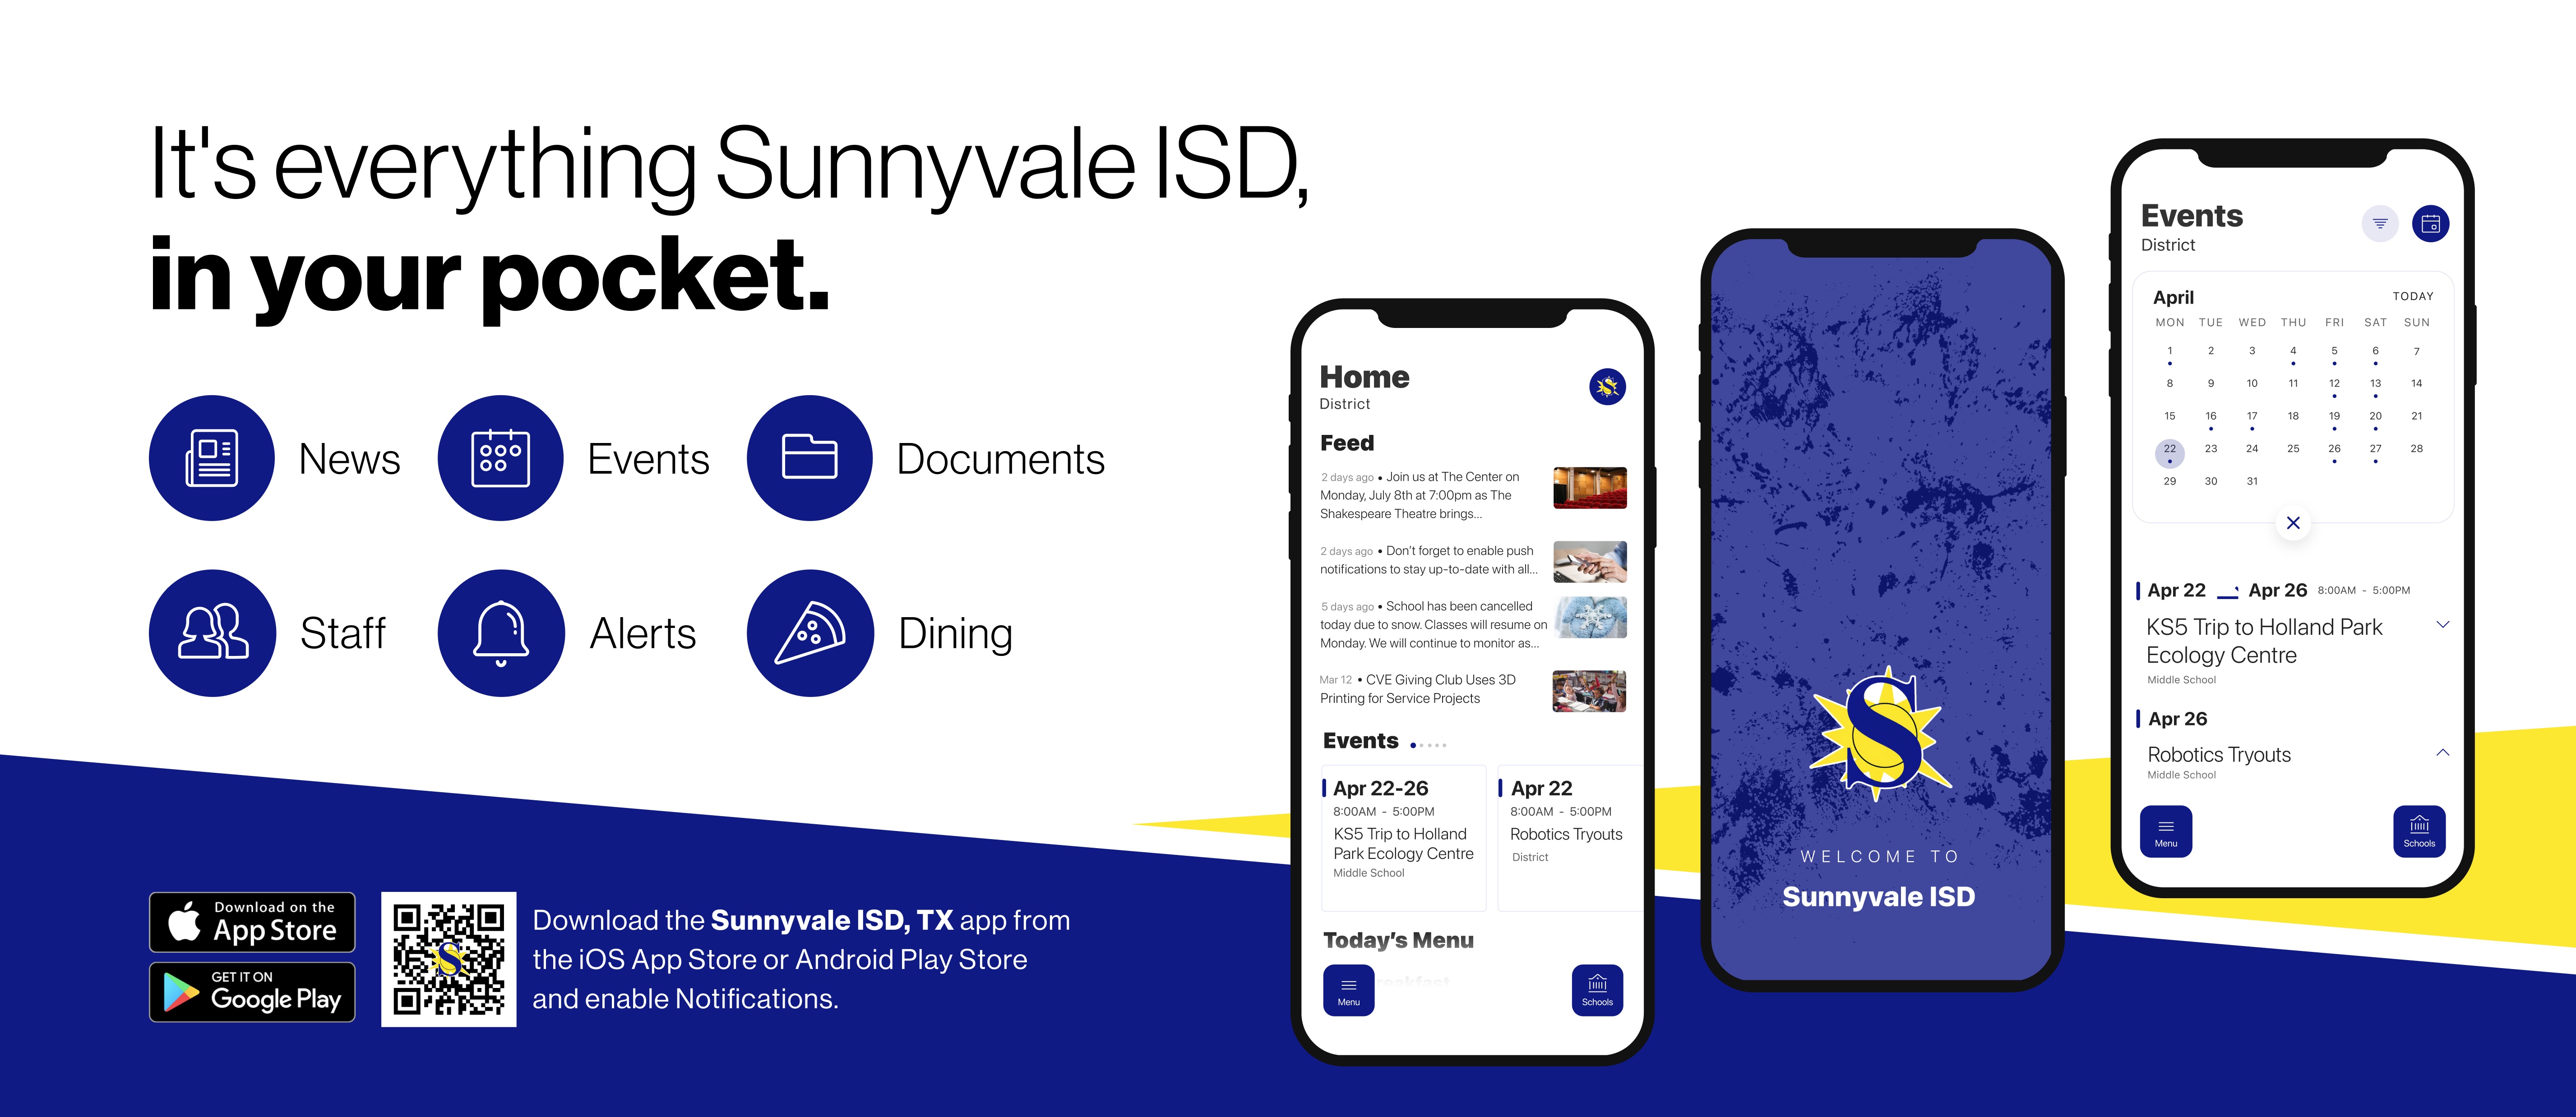 Sunnyvale ISD App